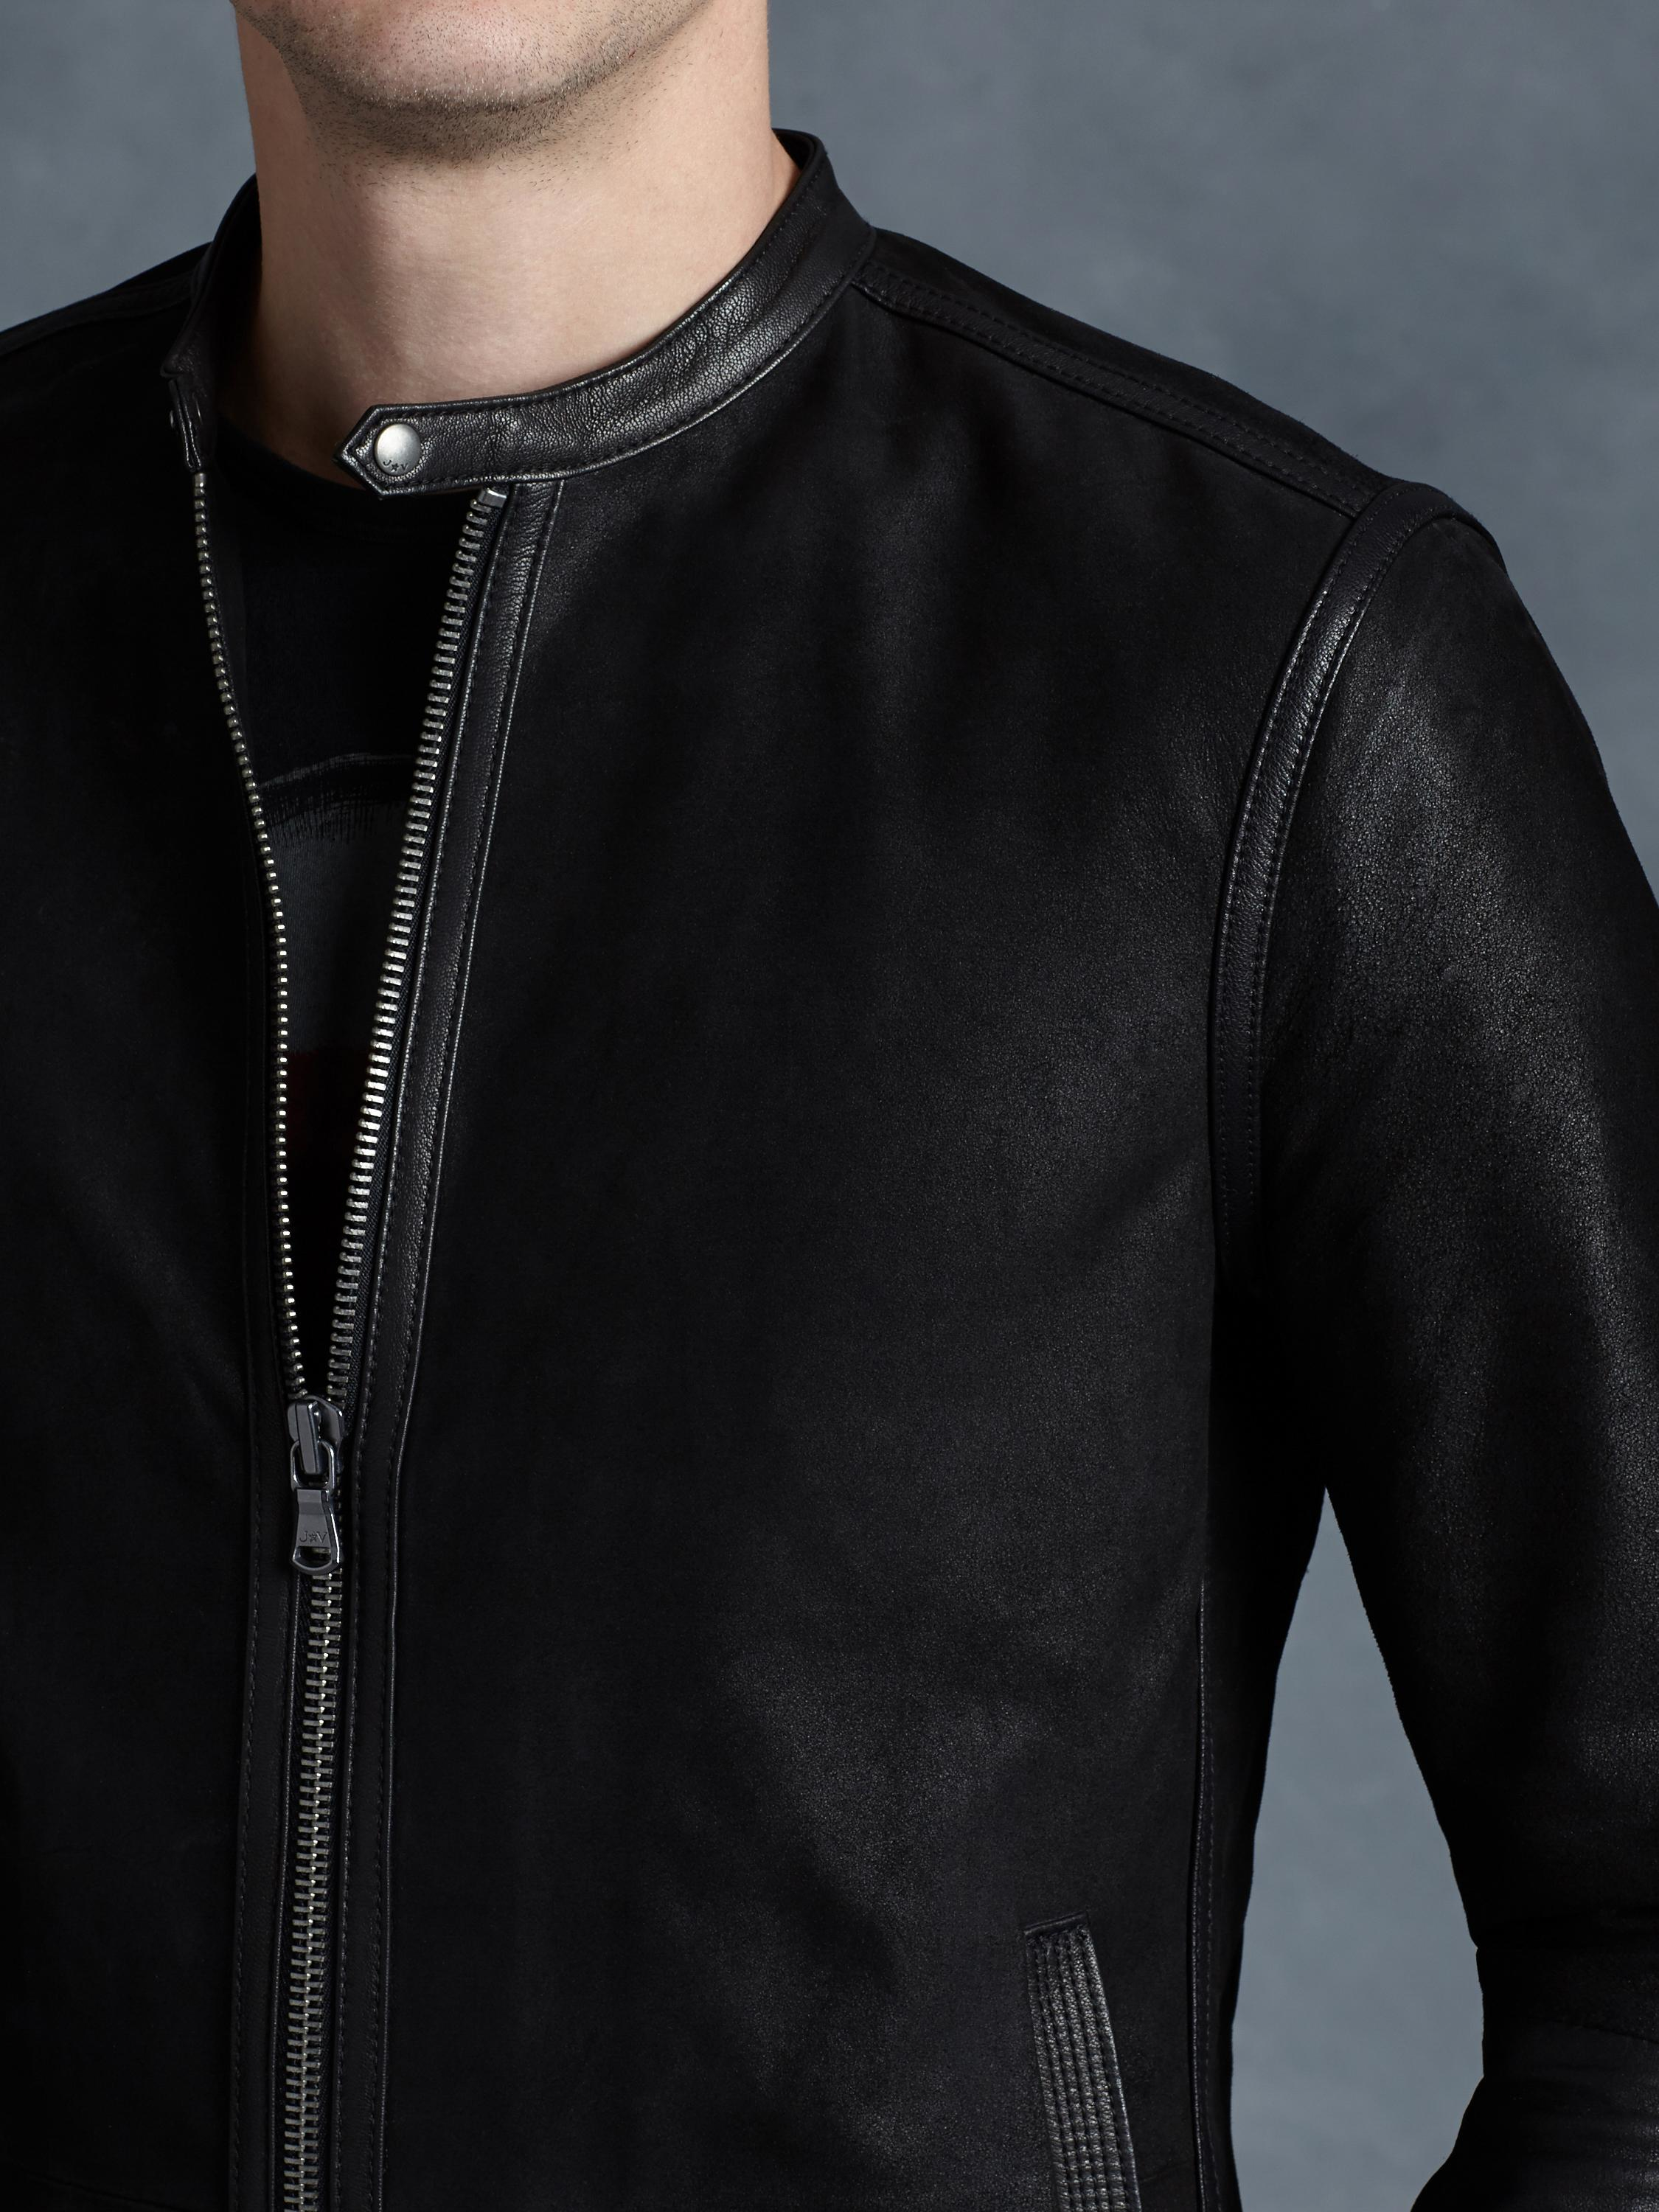 John Varvatos Leather Racer Jacket in Black for Men - Lyst